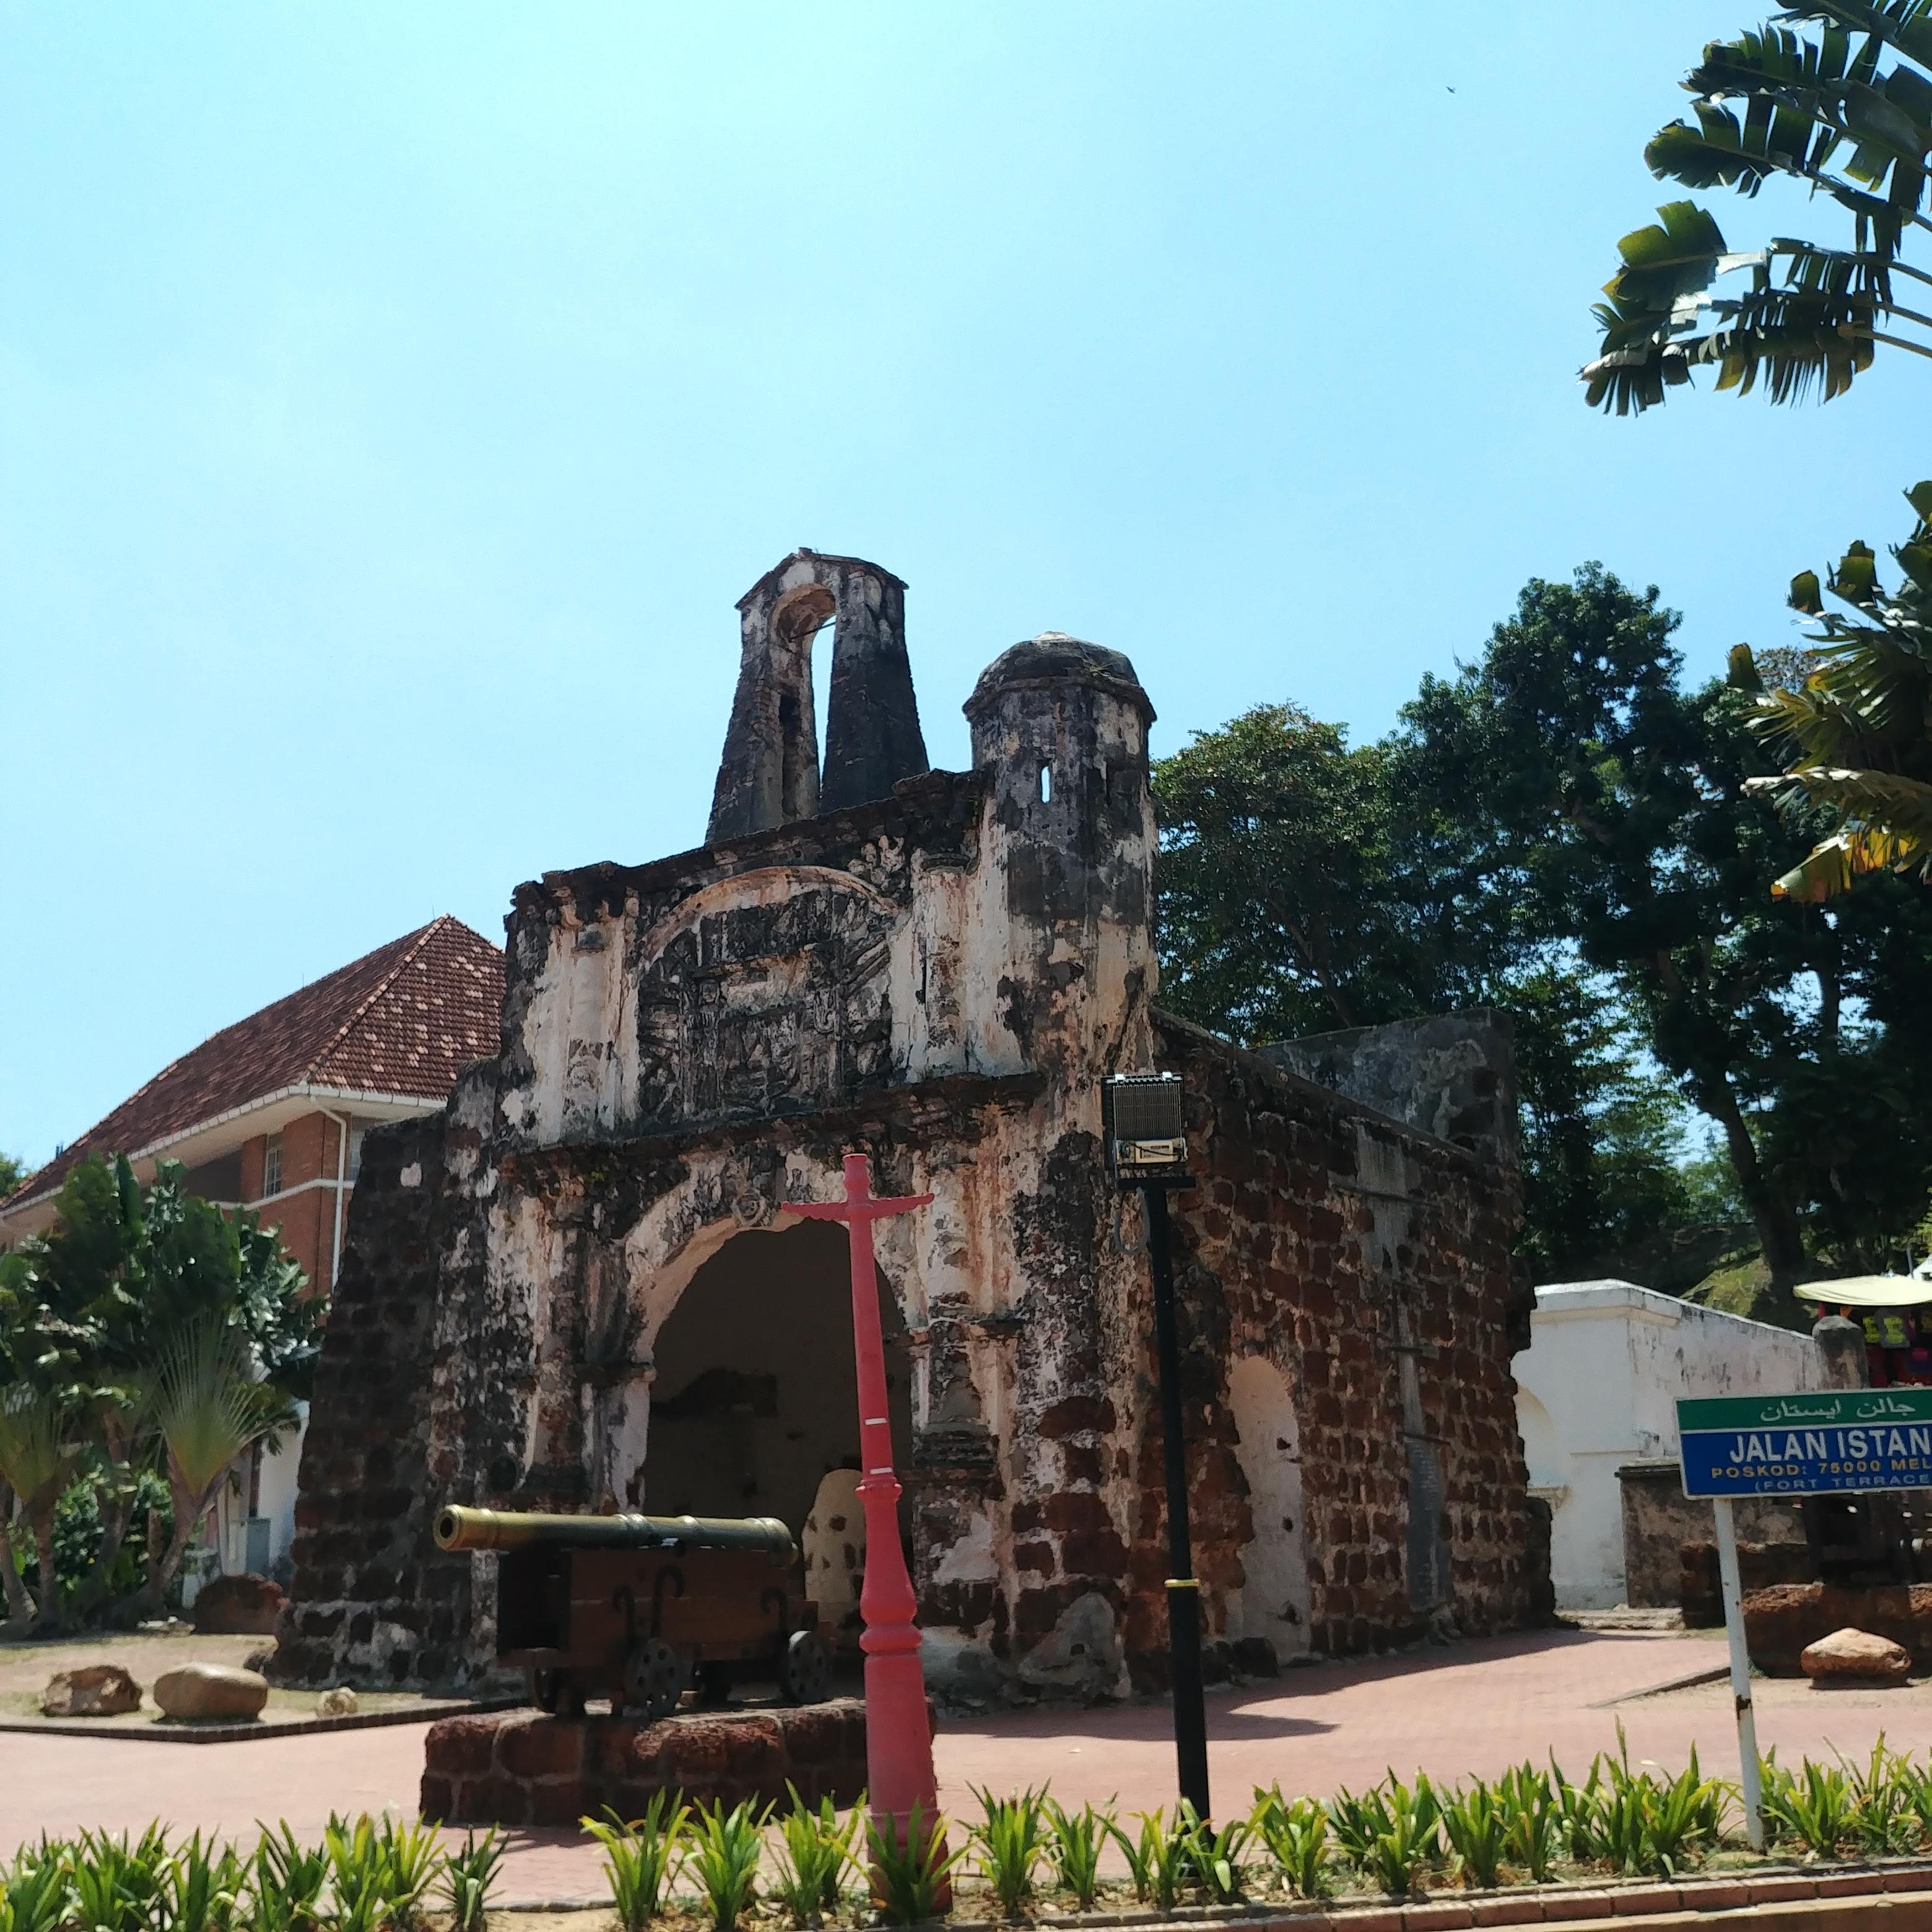 말라카 여행 묘비와 조각상이 있는 교회 유적지 세인트 폴 교회 Gereja St. Paul, Bukit Melaka